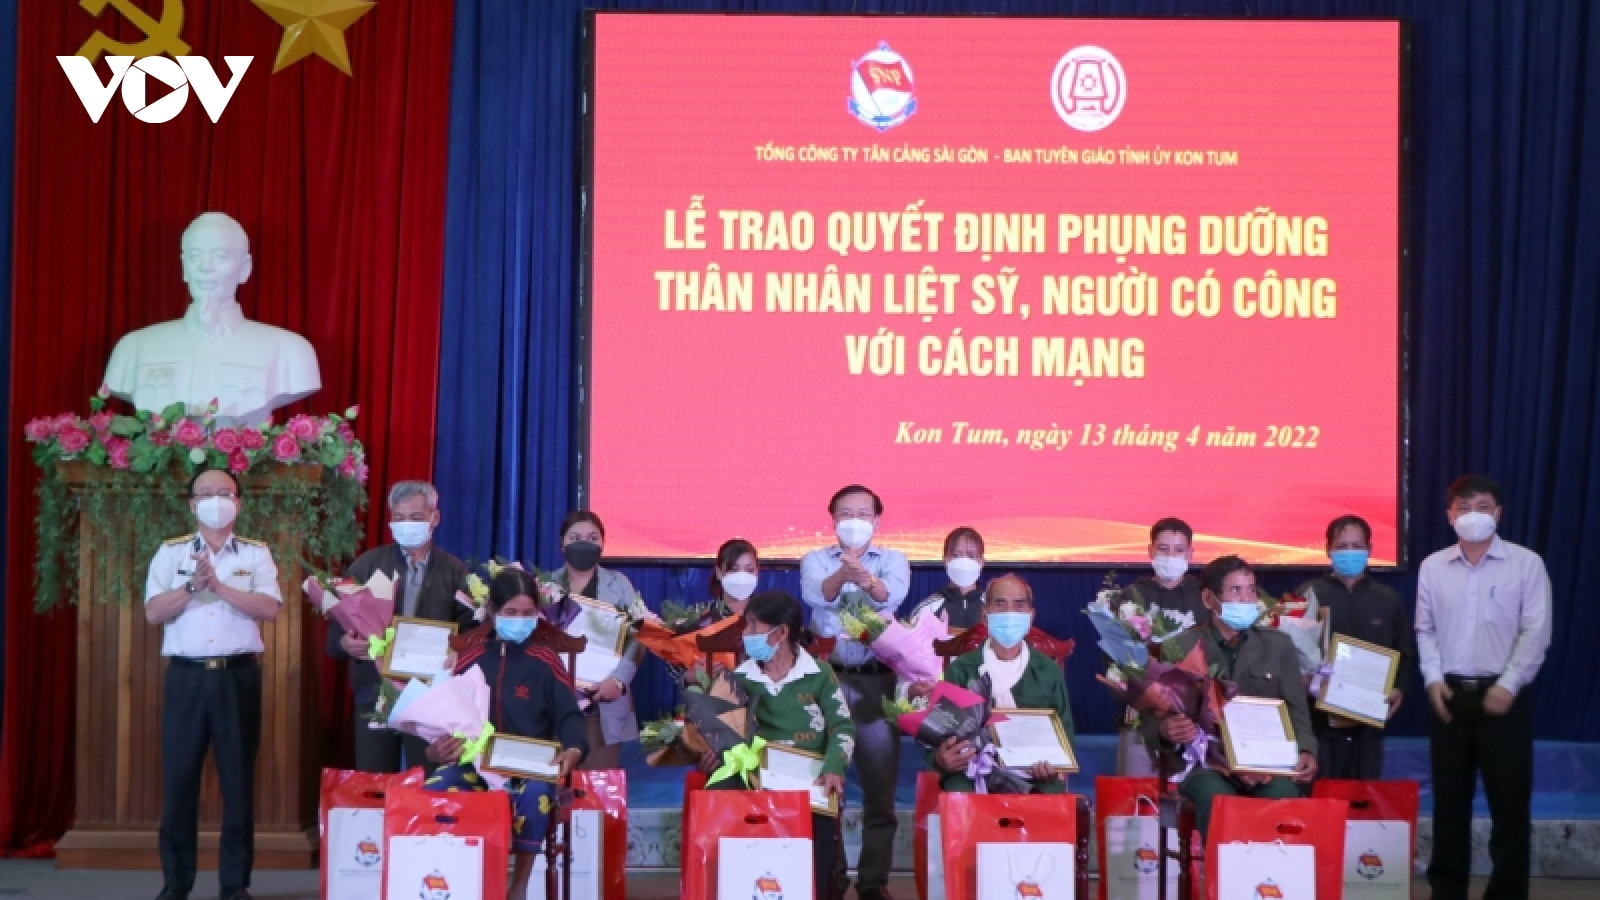 Tổng Công ty Tân Cảng Sài Gòn nhận chăm sóc thân nhân liệt sỹ, người có công tại Kon Tum